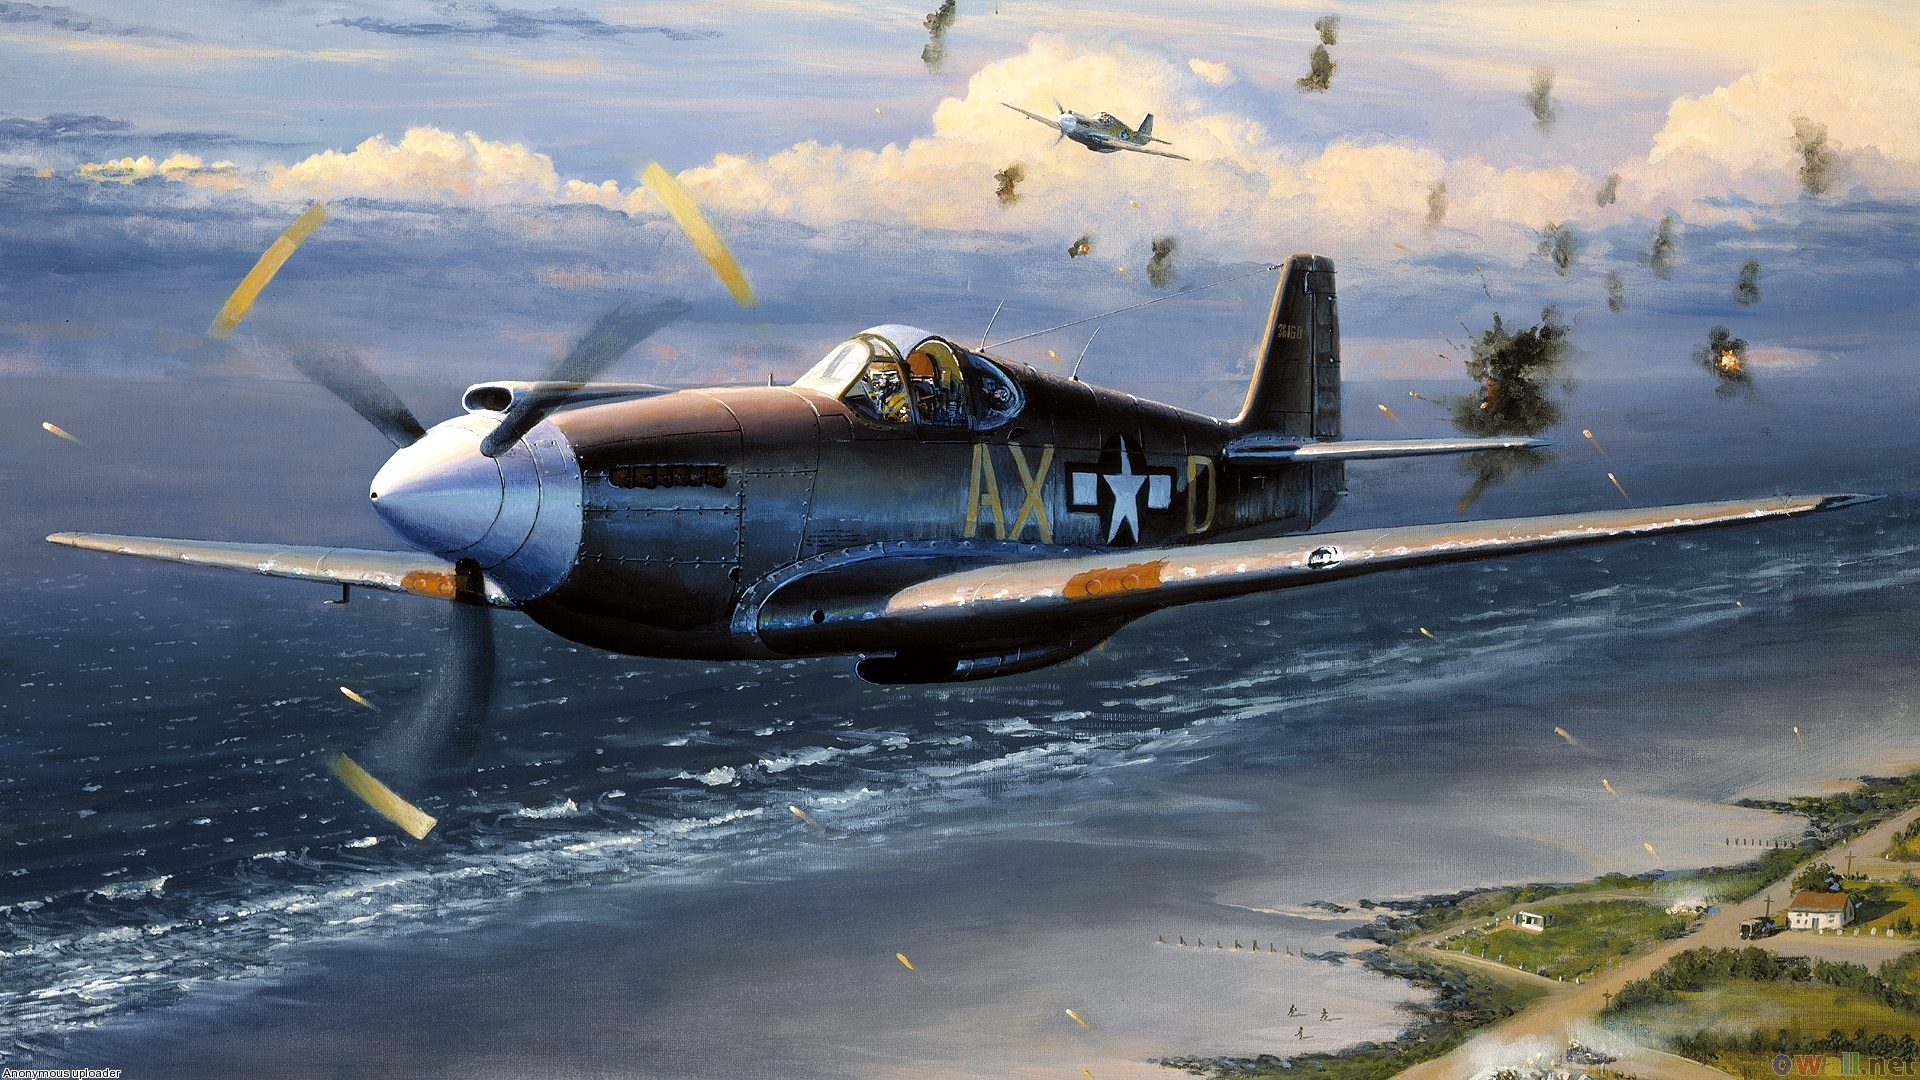 Ax   aircraft of world war ii wallpaper 17332   Open Walls 1920x1080